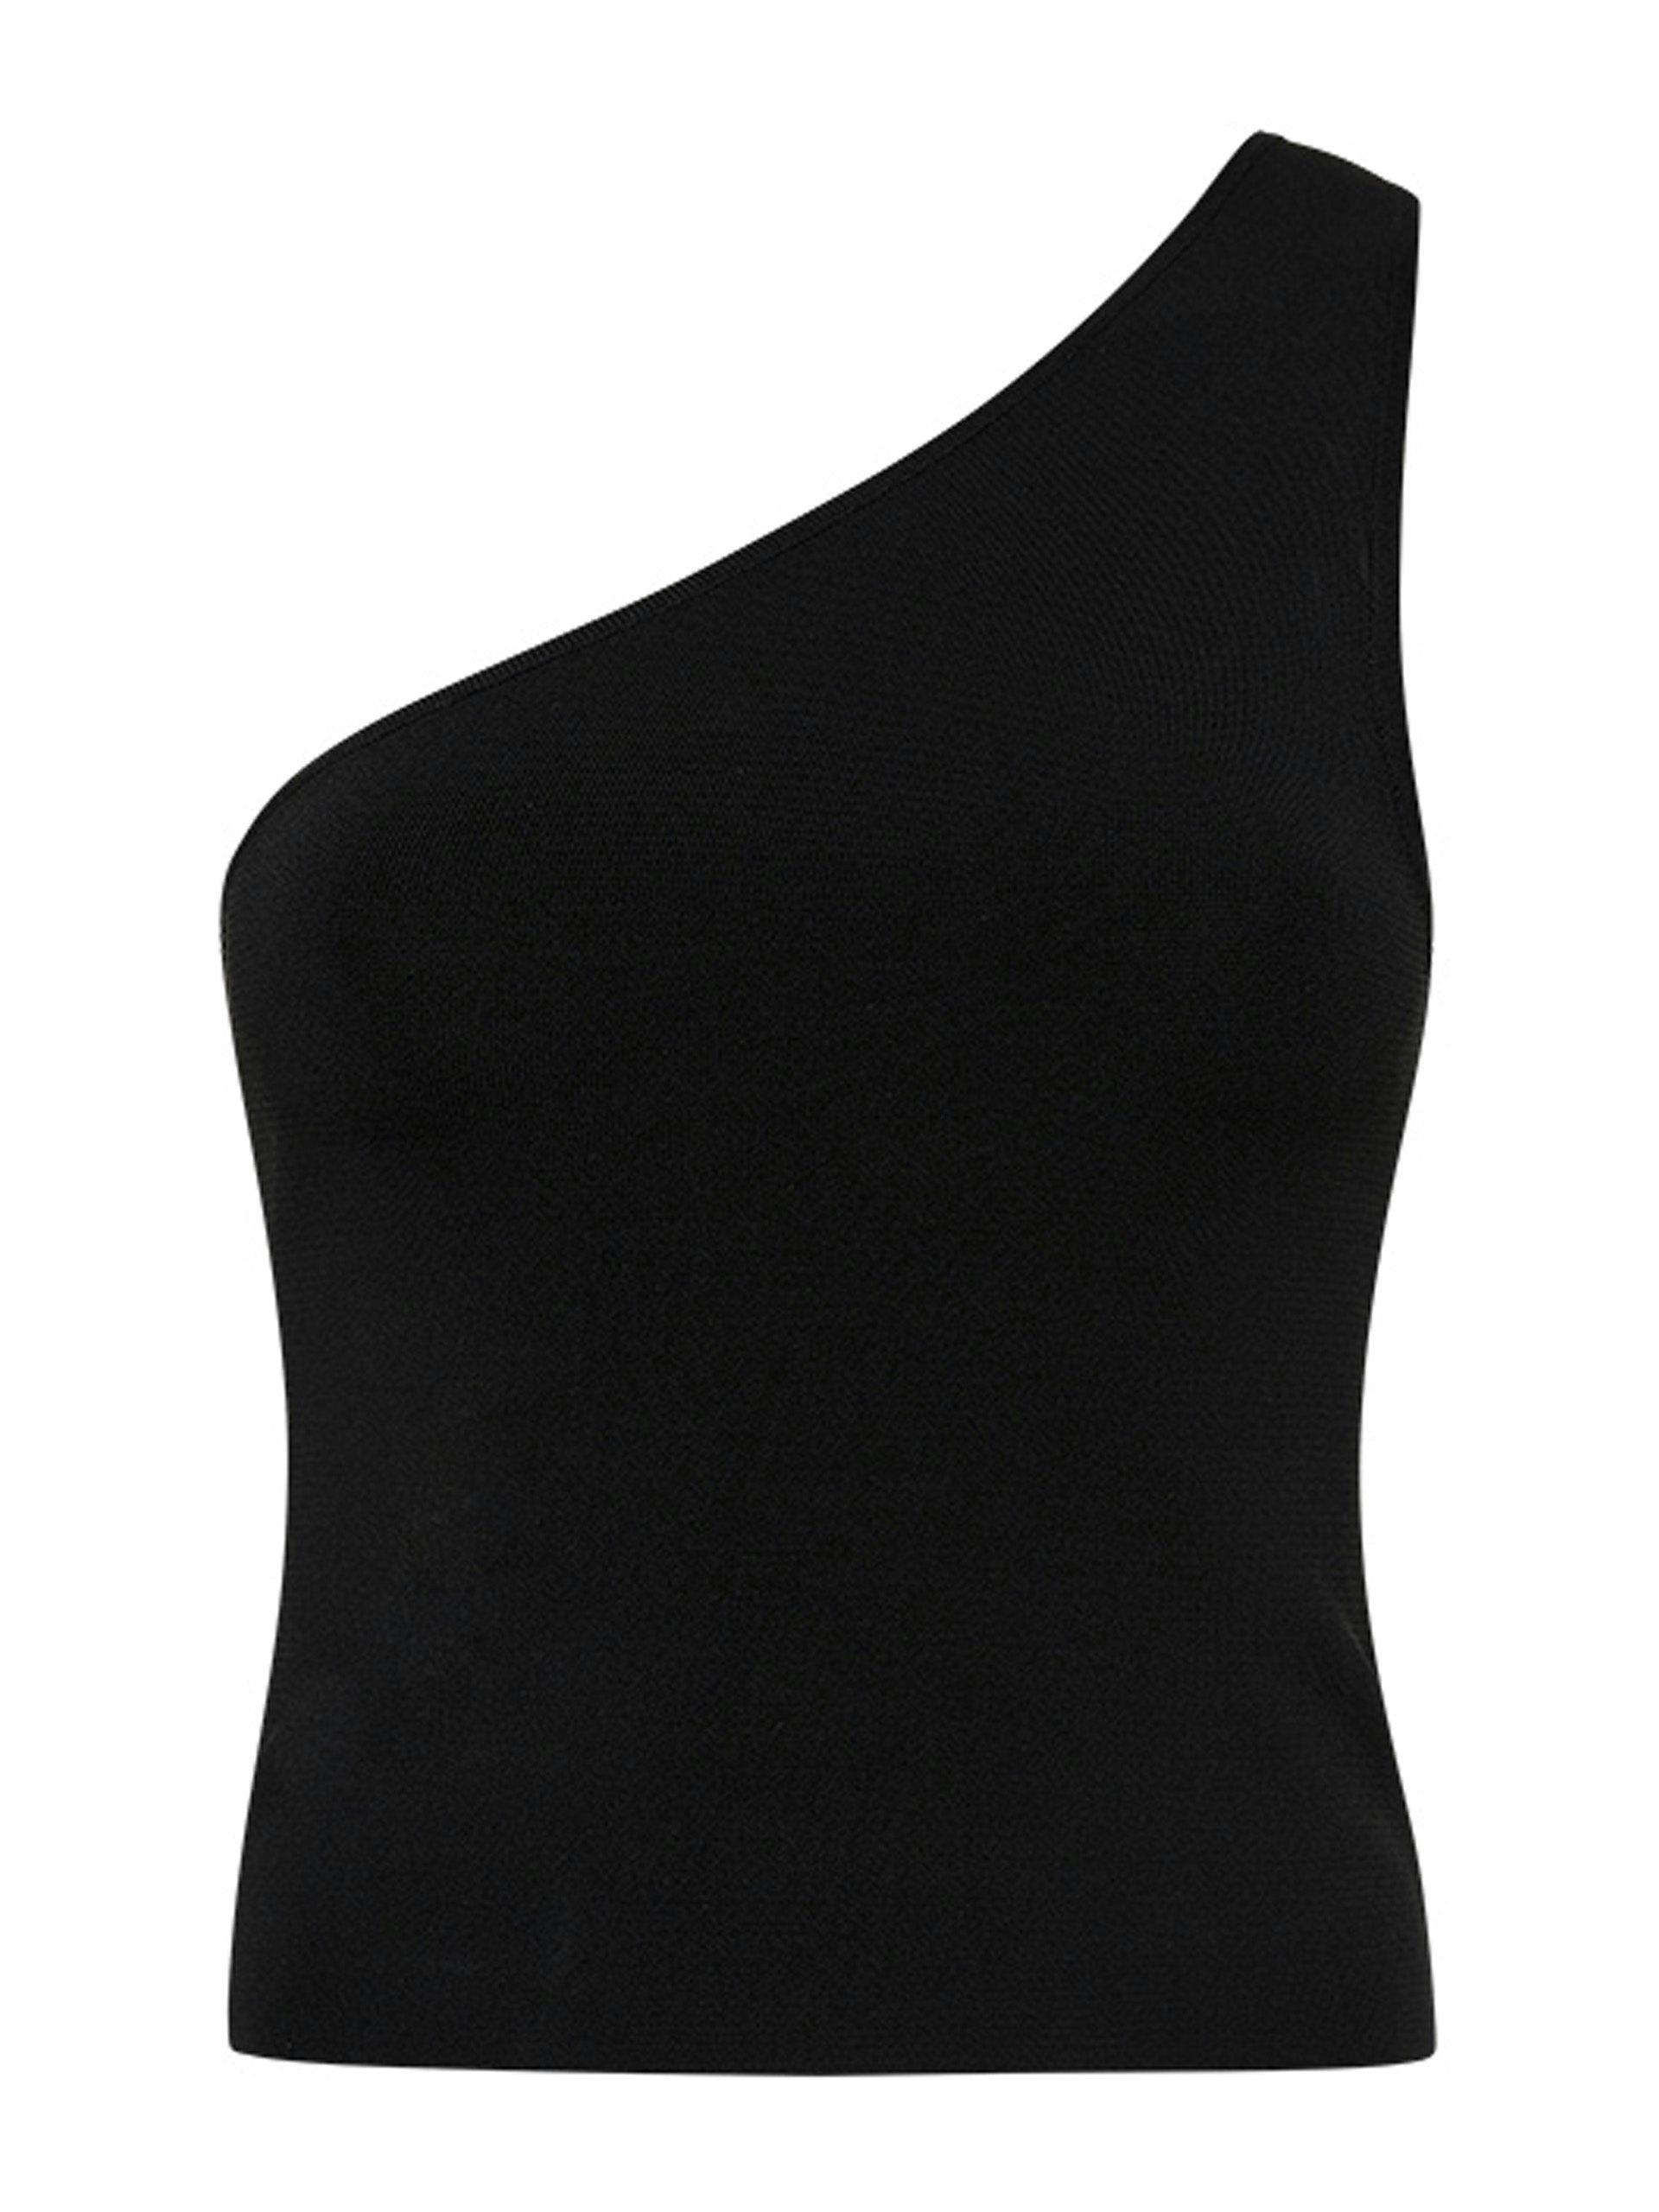 Black knit asymmetric tank top